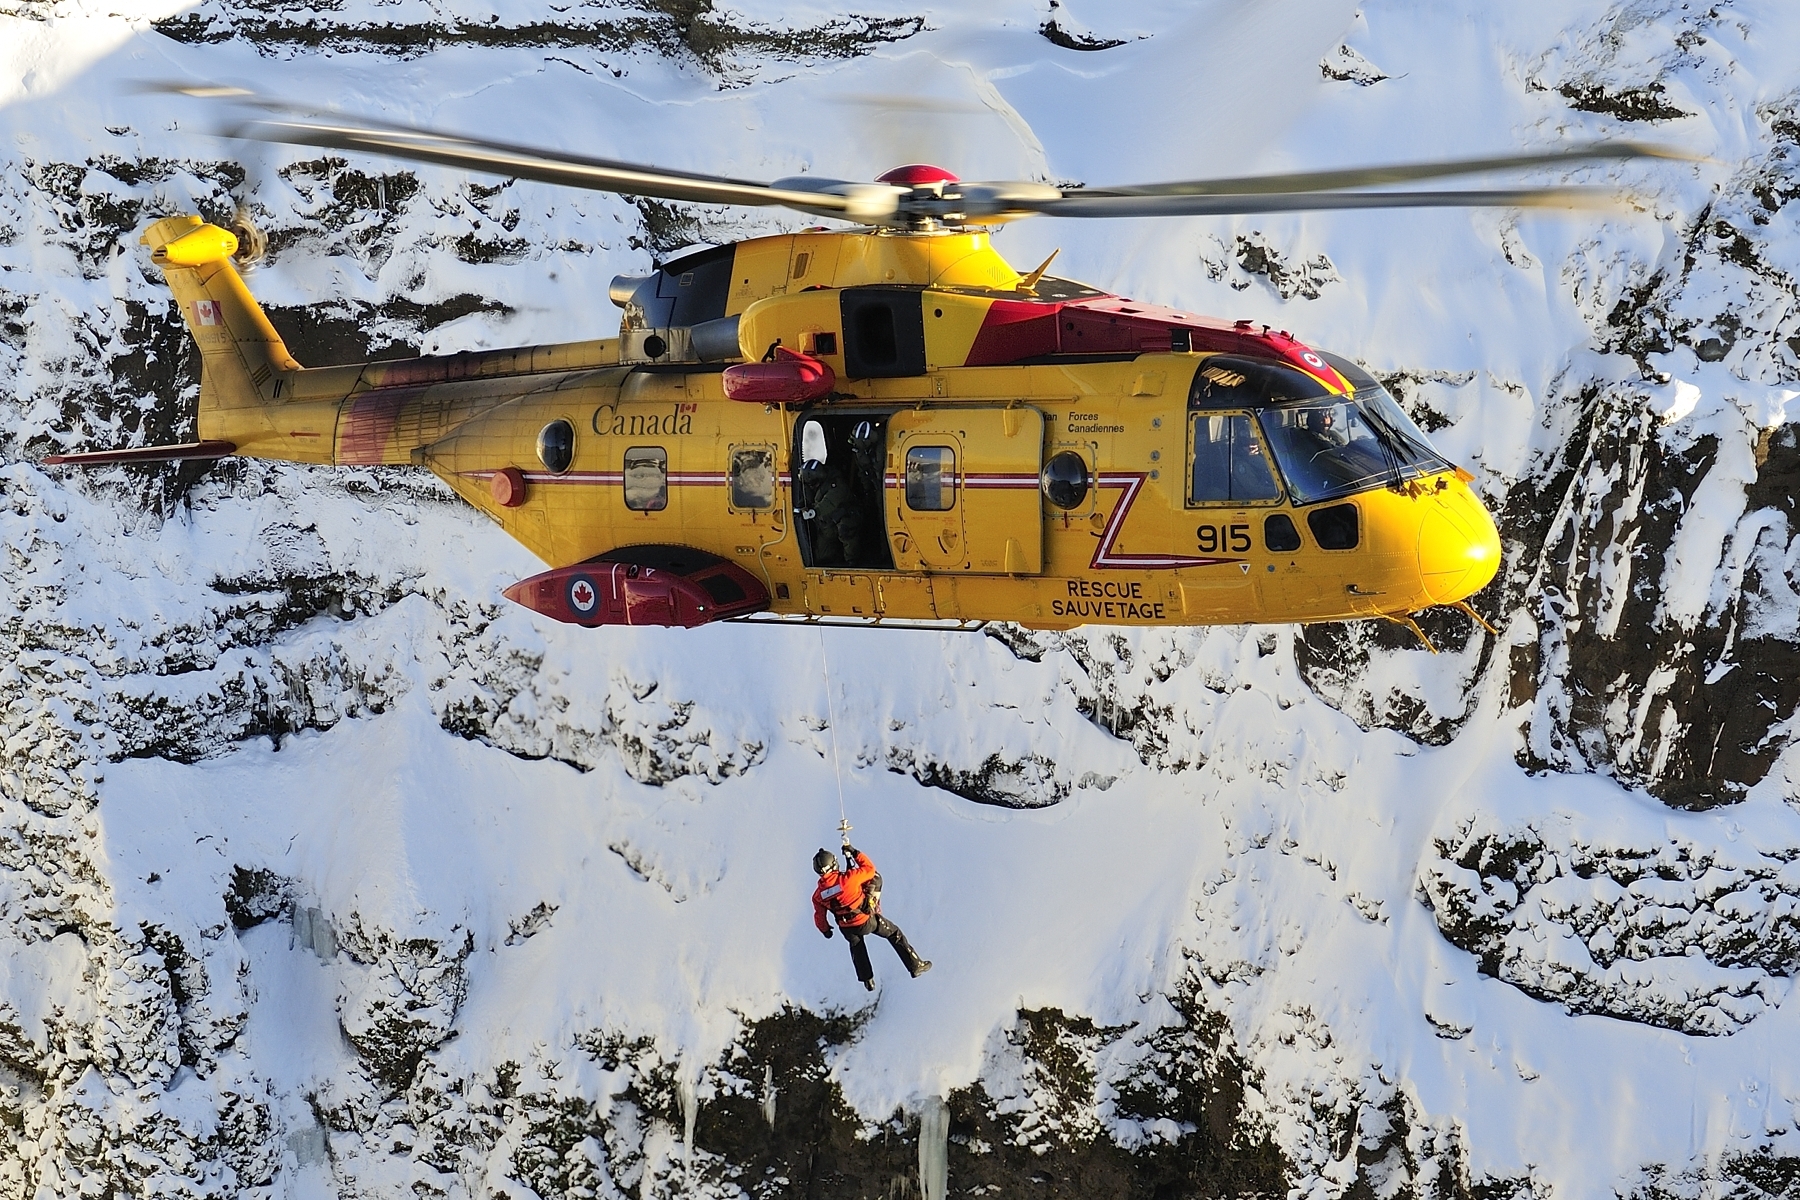 Le sergent Kevin O'Donnell, technicien en recherche et en sauvetage du 103e Escadron de recherche et de sauvetage, basé à Gander, à Terre-Neuve-et-Labrador, descend d’un hélicoptère CH-149 Cormorant à l’aide d’un treuil en vue de participer à un scénario de sauvetage en montagne lors d’un exercice de recherche et de sauvetage en Islande, le 10 février 2016. PHOTO : Caporal-chef Johanie Maheu